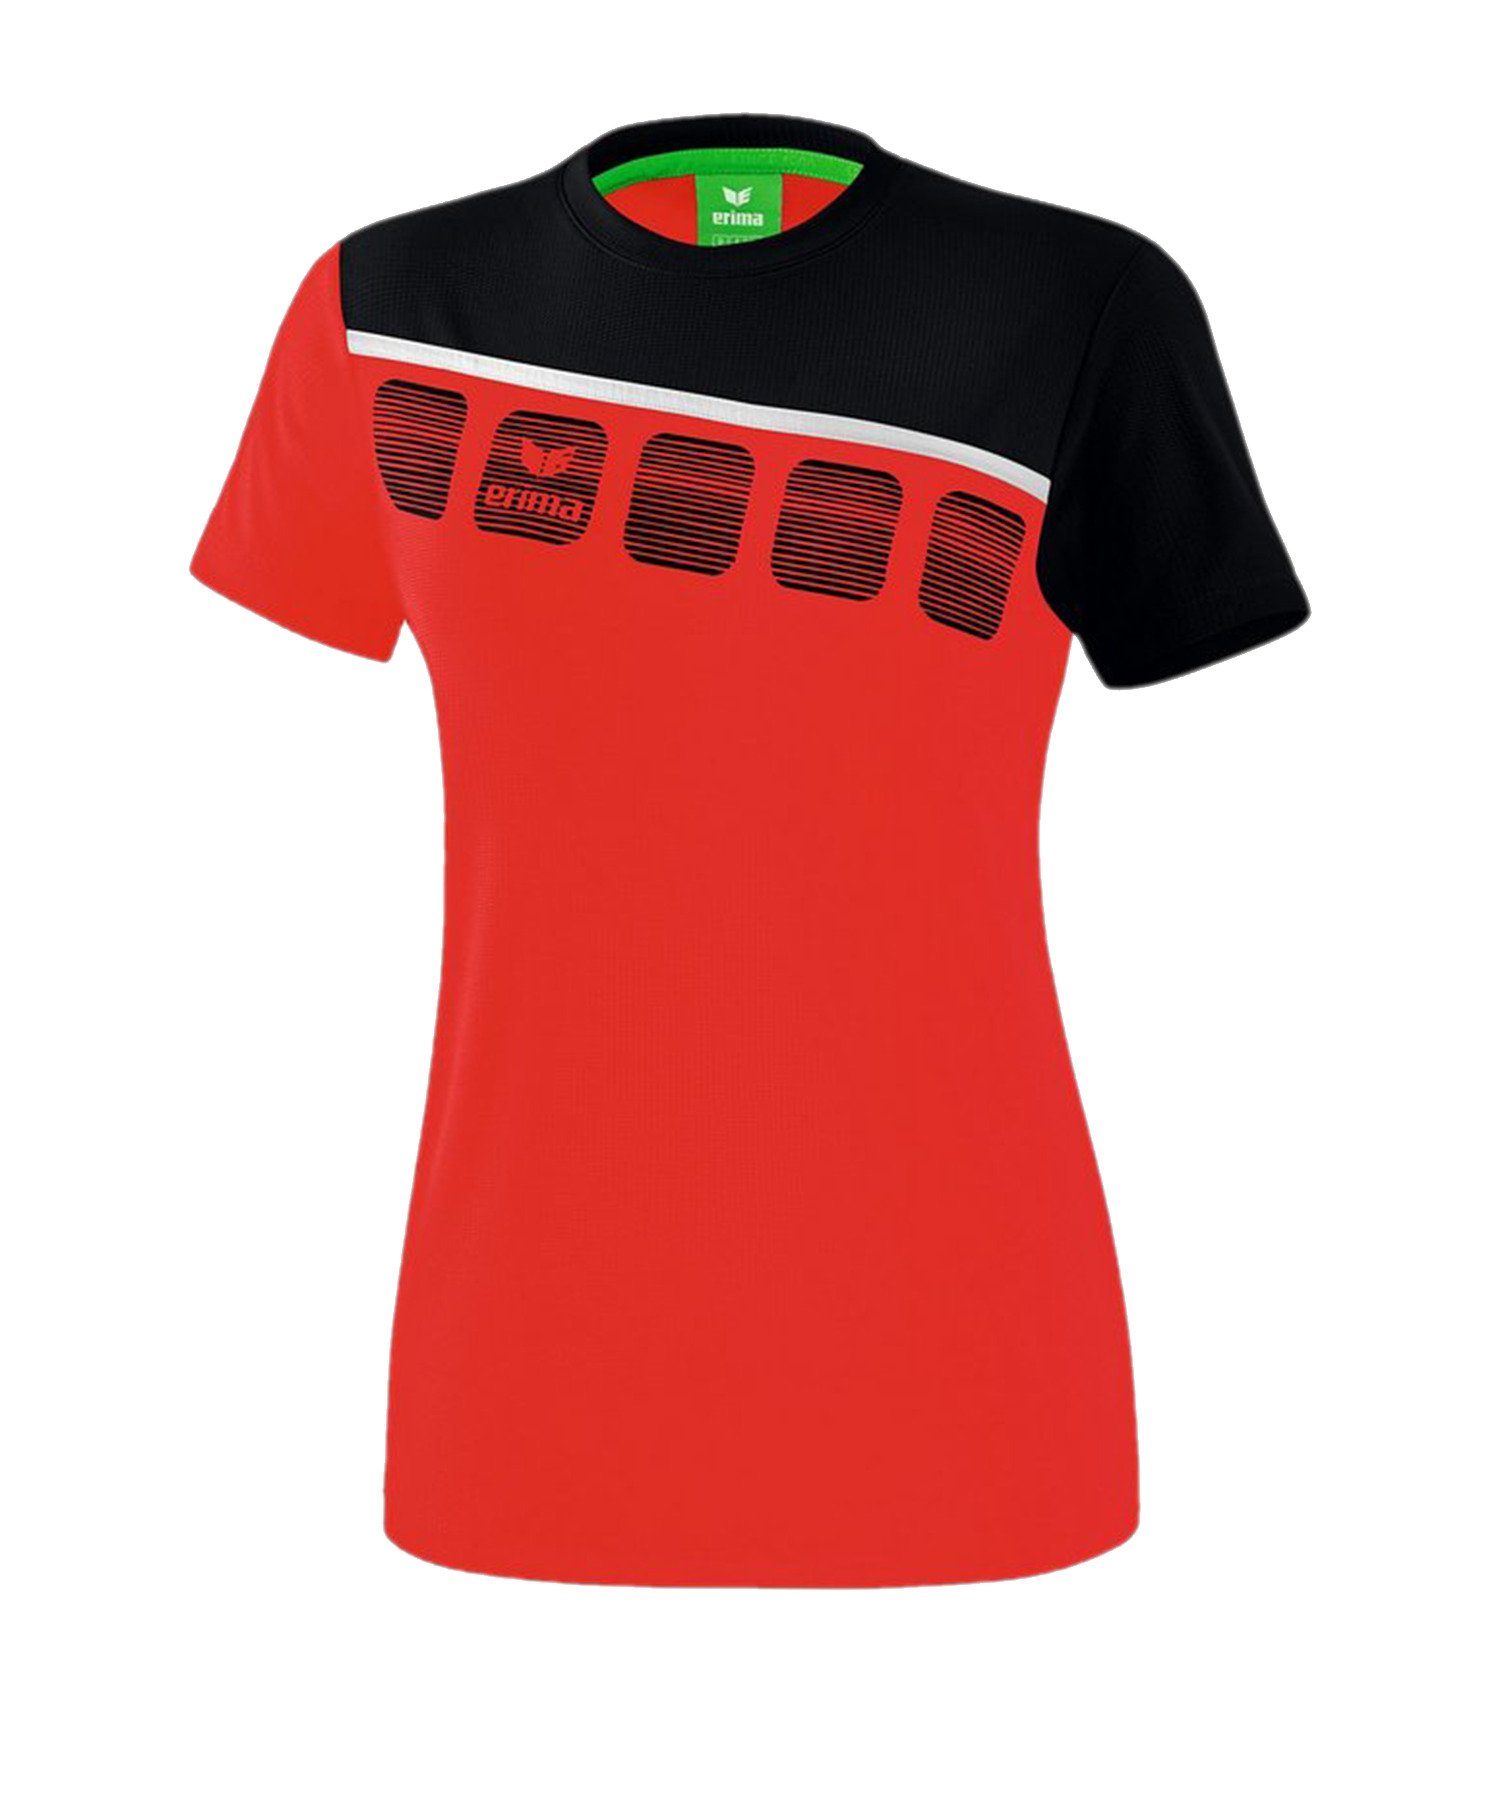 Erima T-Shirt 5-C Damen default RotSchwarzWeiss T-Shirt